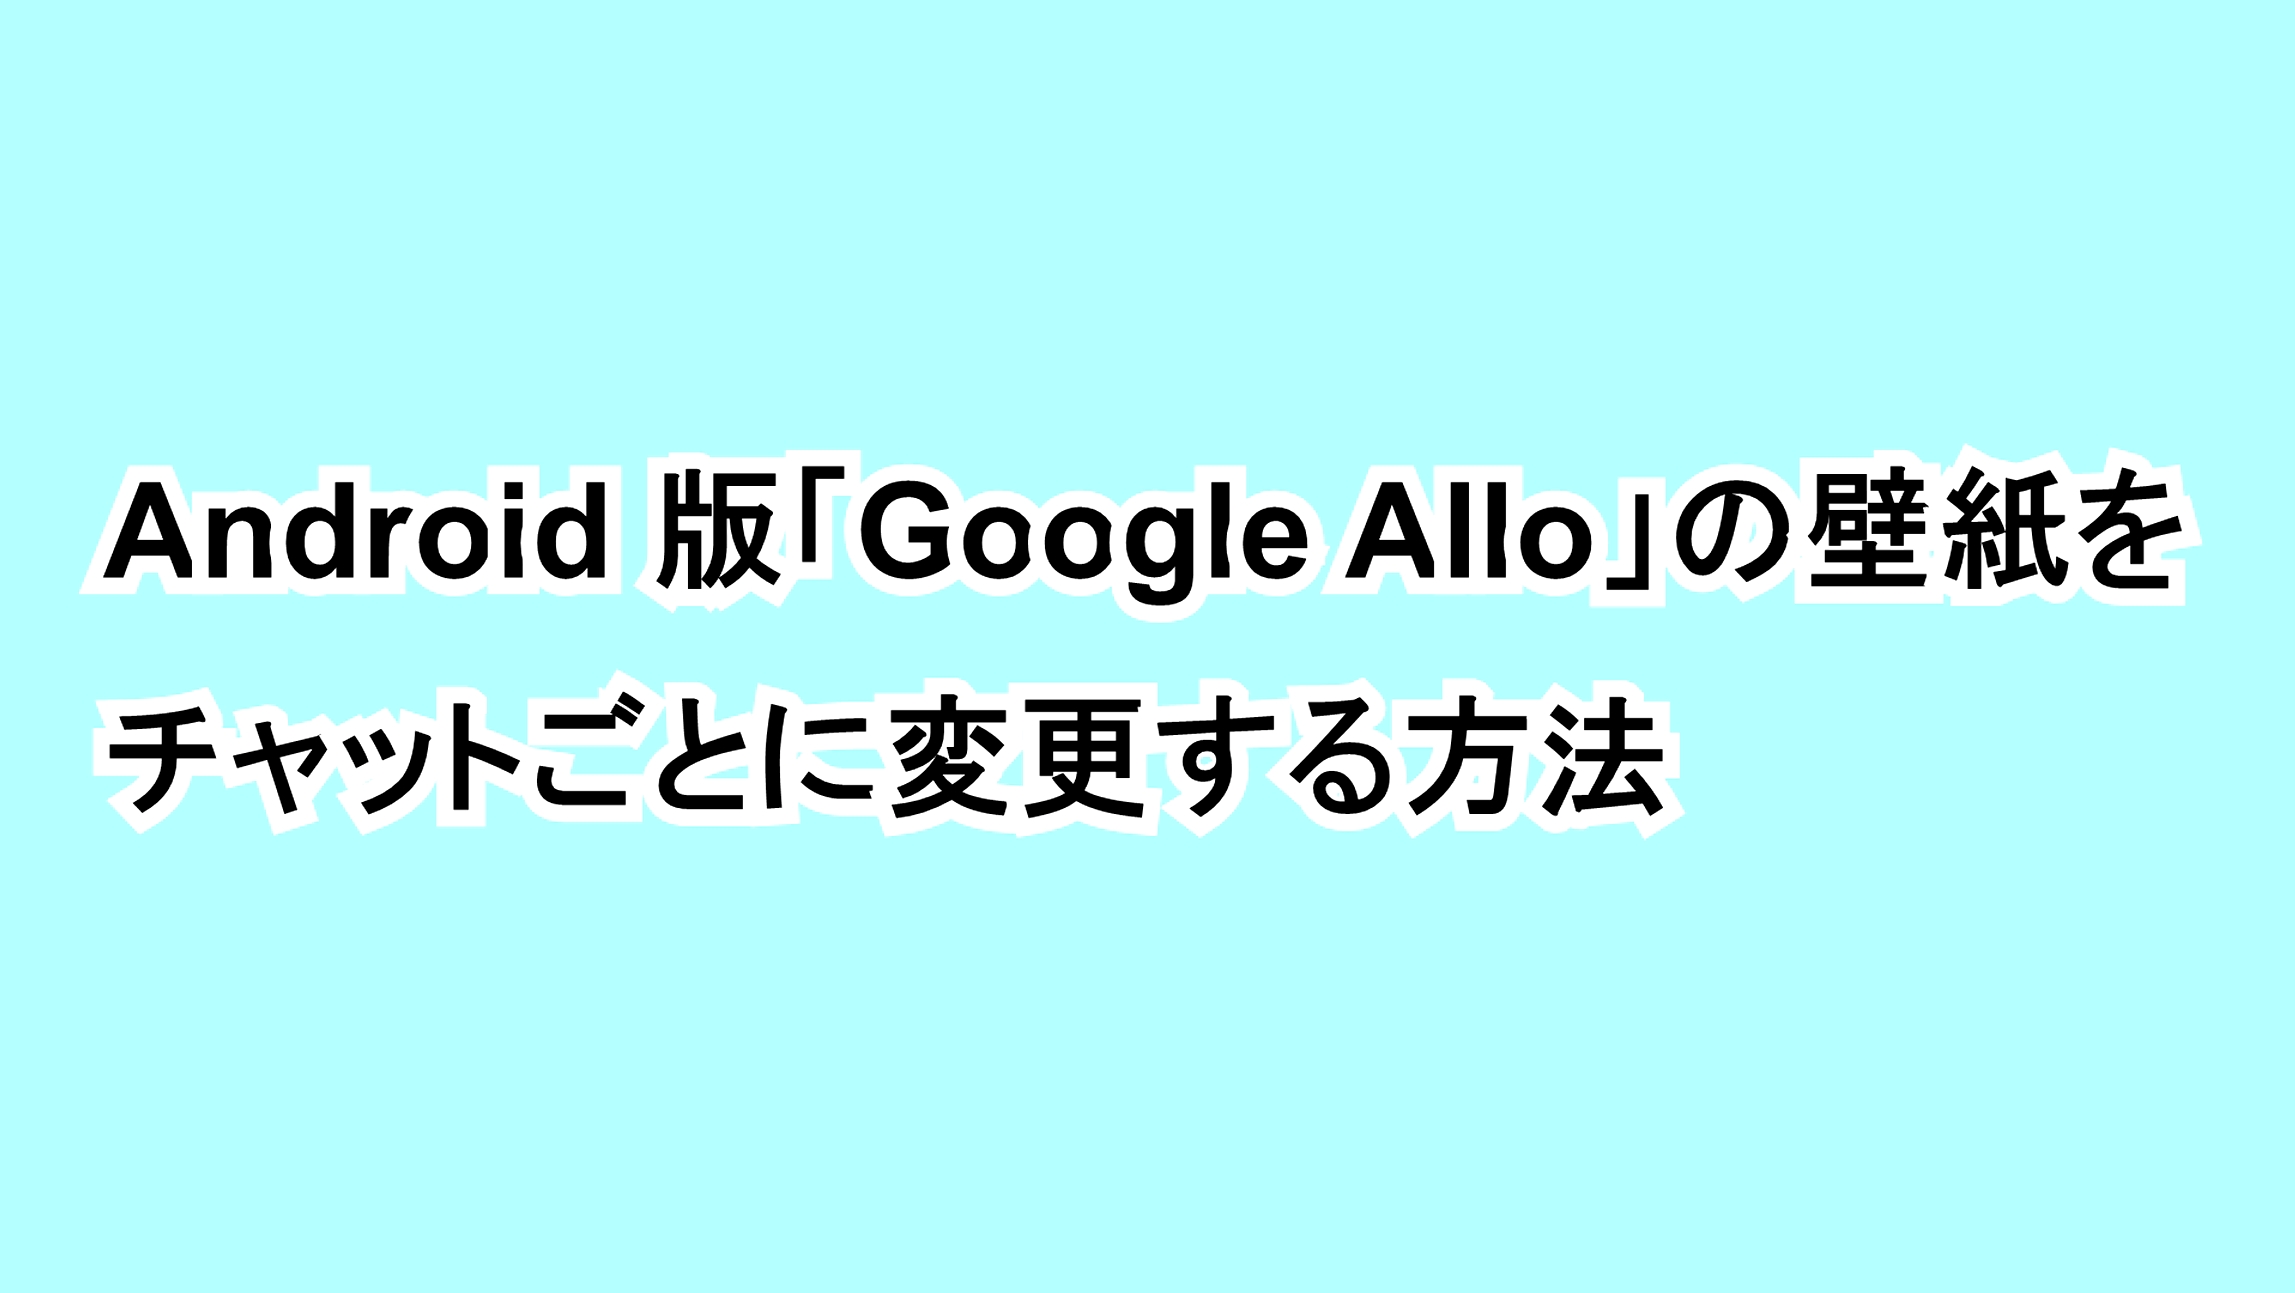 Android版「Google Allo」の壁紙をチャットごとに変更する方法